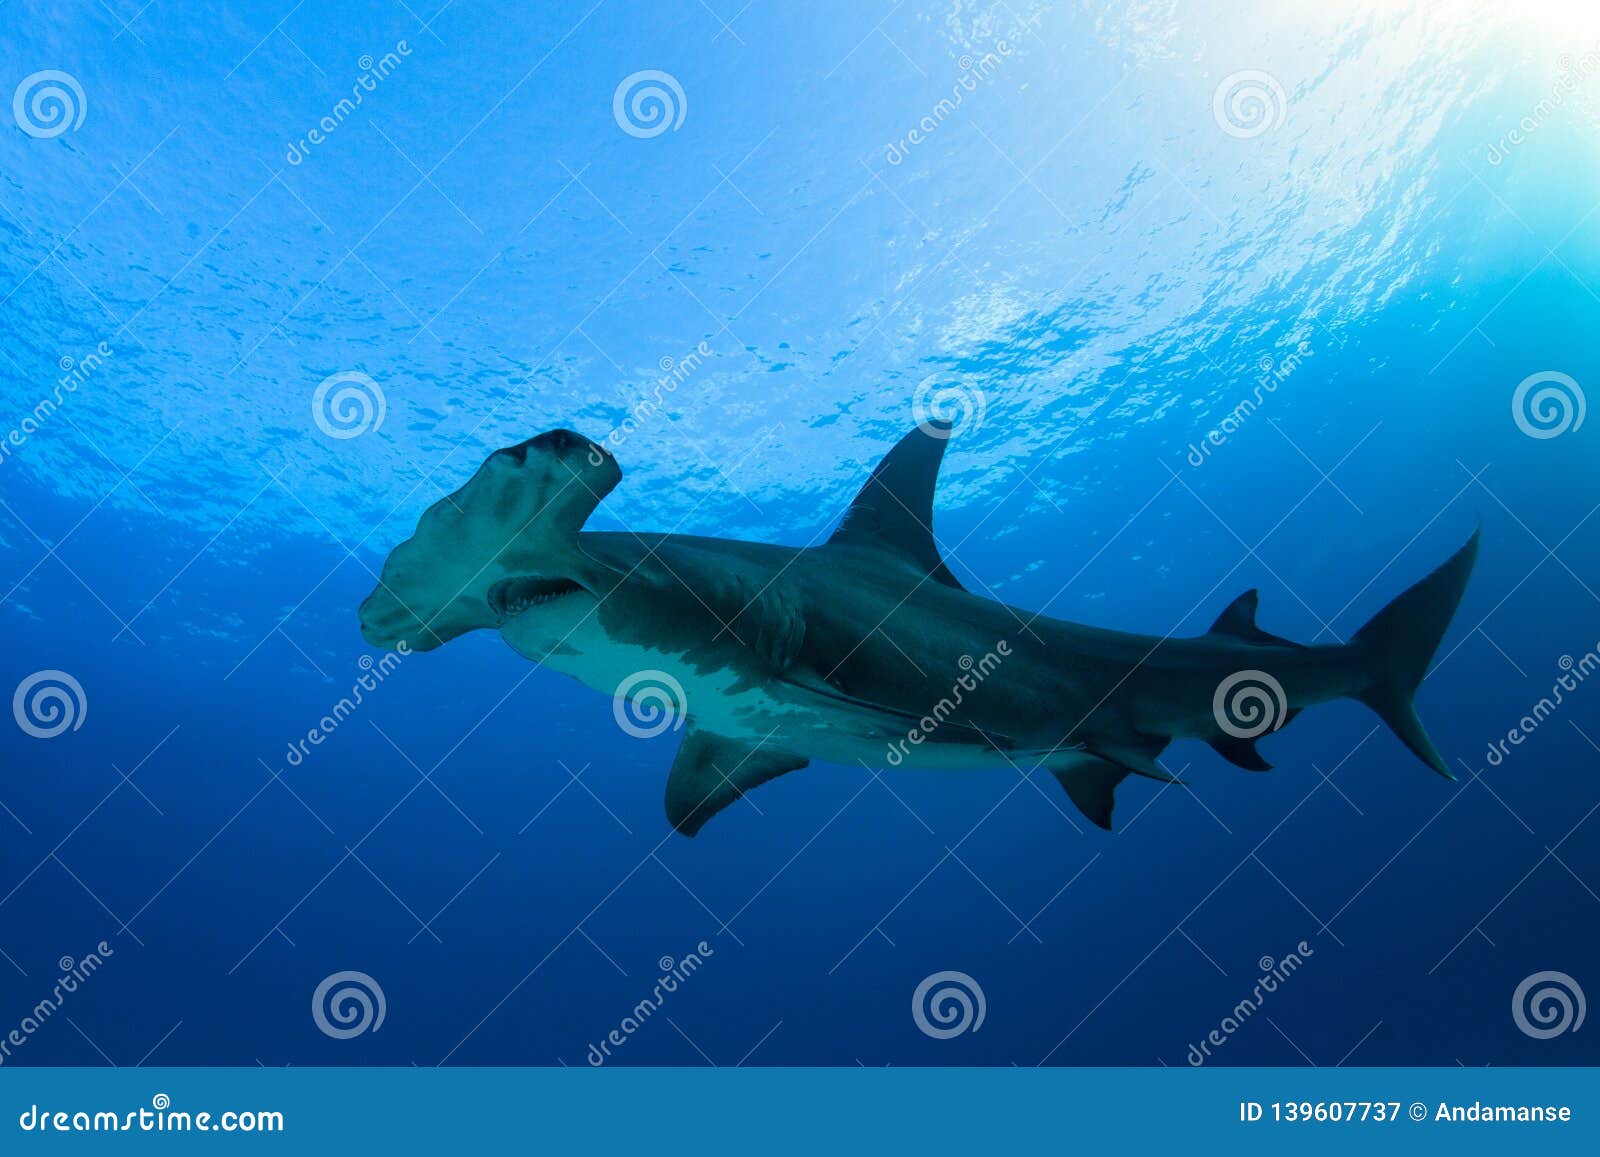 锤头双髻鲨 Sphyrna zygaena - 物种库 - 国家动物标本资源库